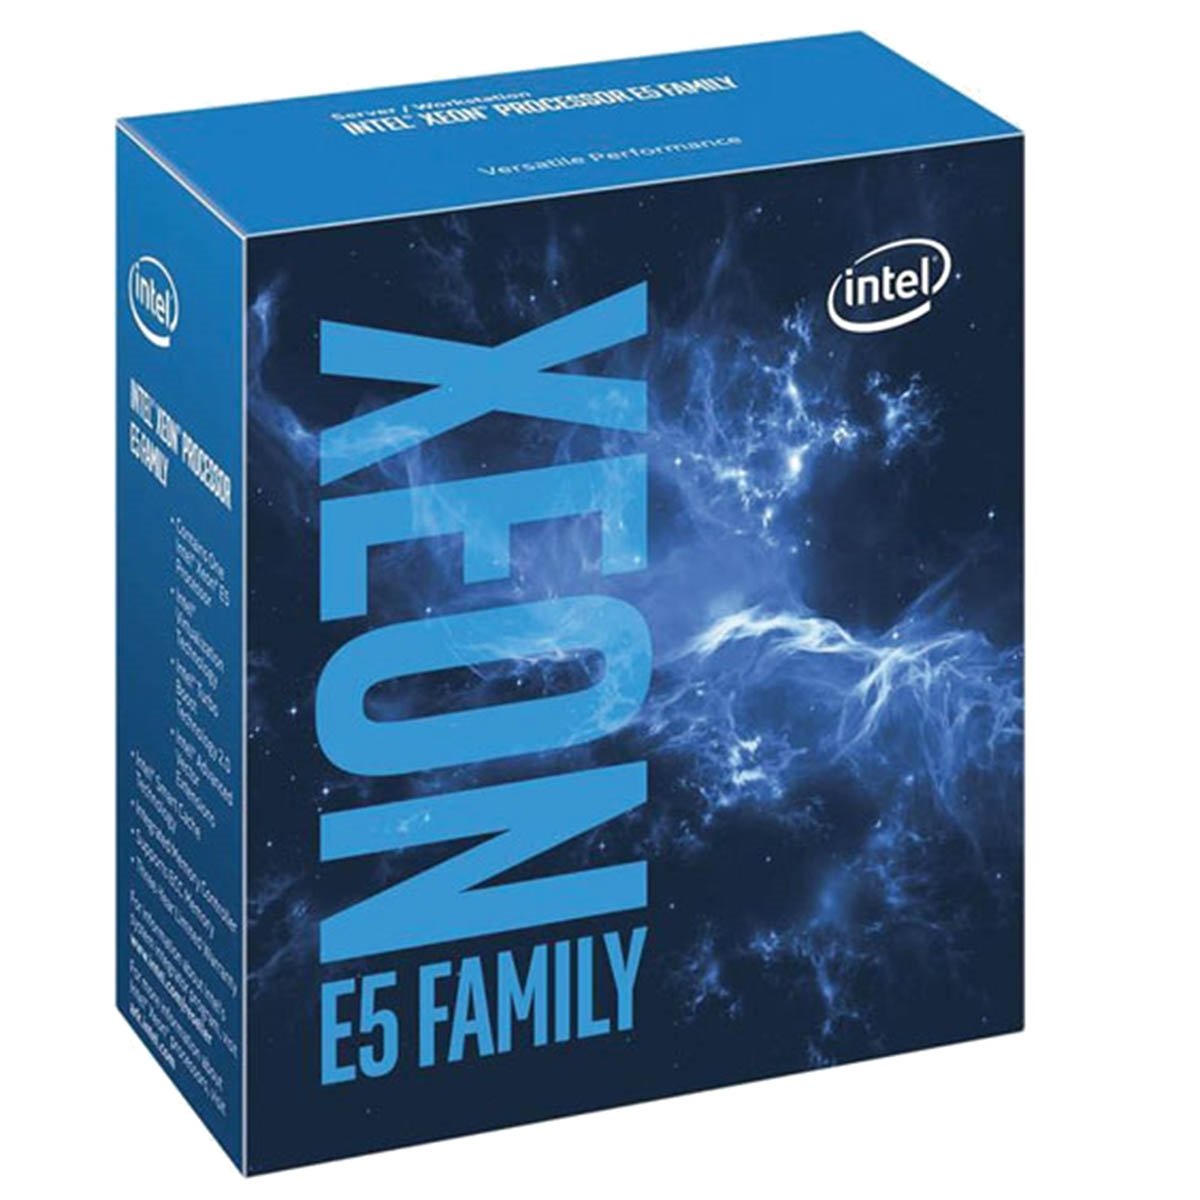 Xeon E5 2630v4 2 20ghz Intel Server Cpu Bx80660e52630v4 5032037085656